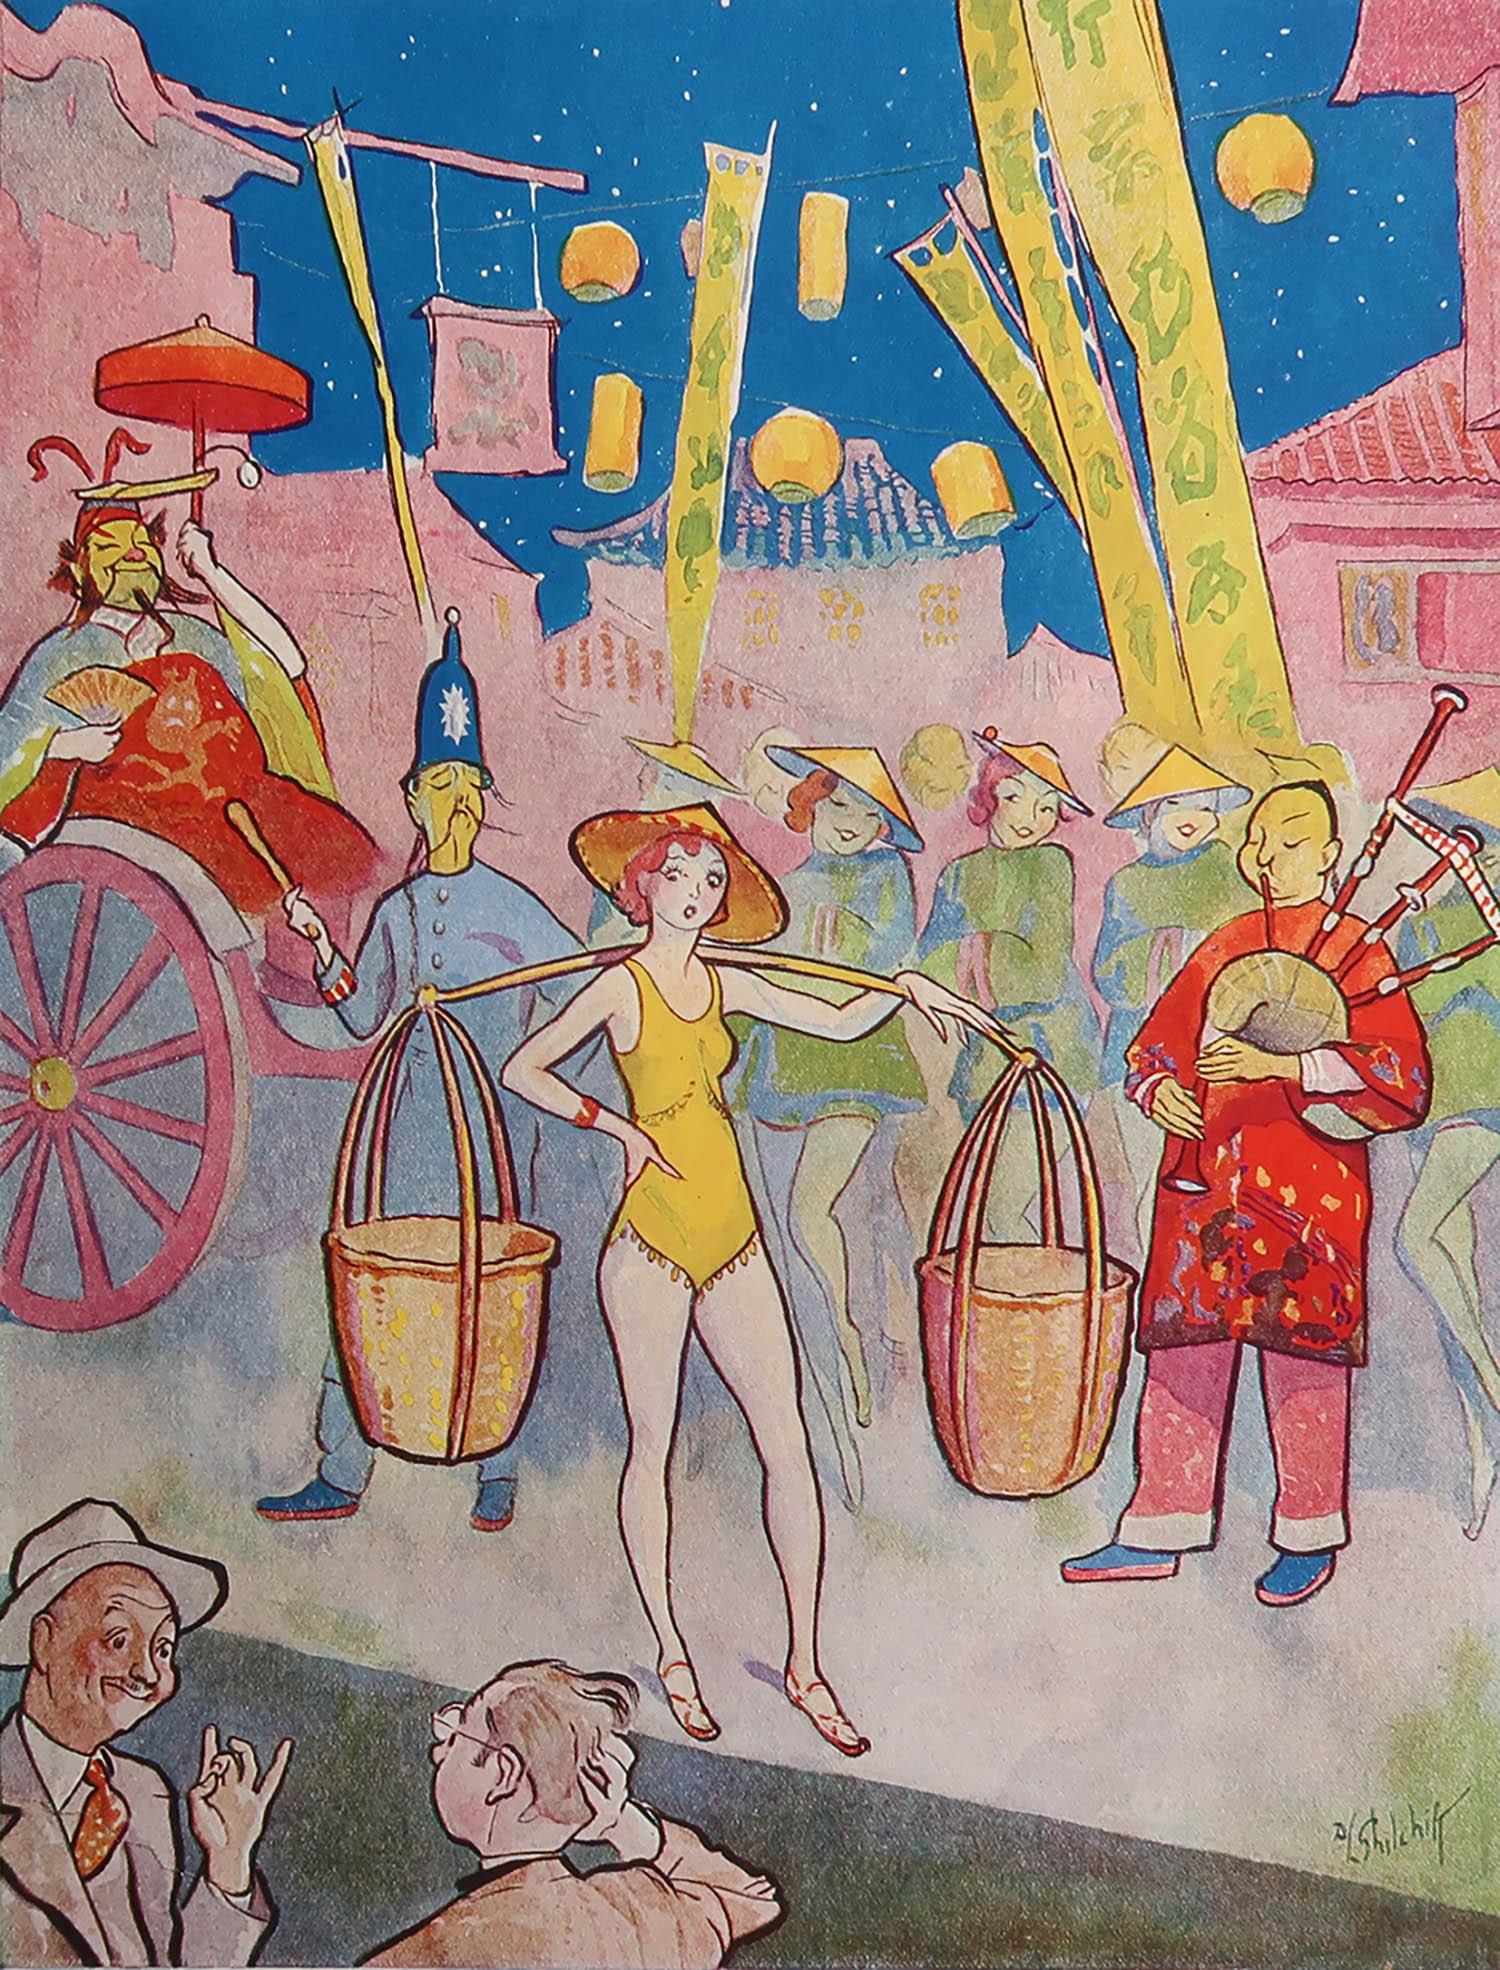 Super Bild von Ghilchick

Ursprünglich eine Platte aus Punch oder The London Charivari

Veröffentlicht 1934

Die angegebenen Maße beziehen sich auf die Papiergröße und nicht auf das tatsächliche Bild.

Reparatur eines kurzen Randeinrisses unten links